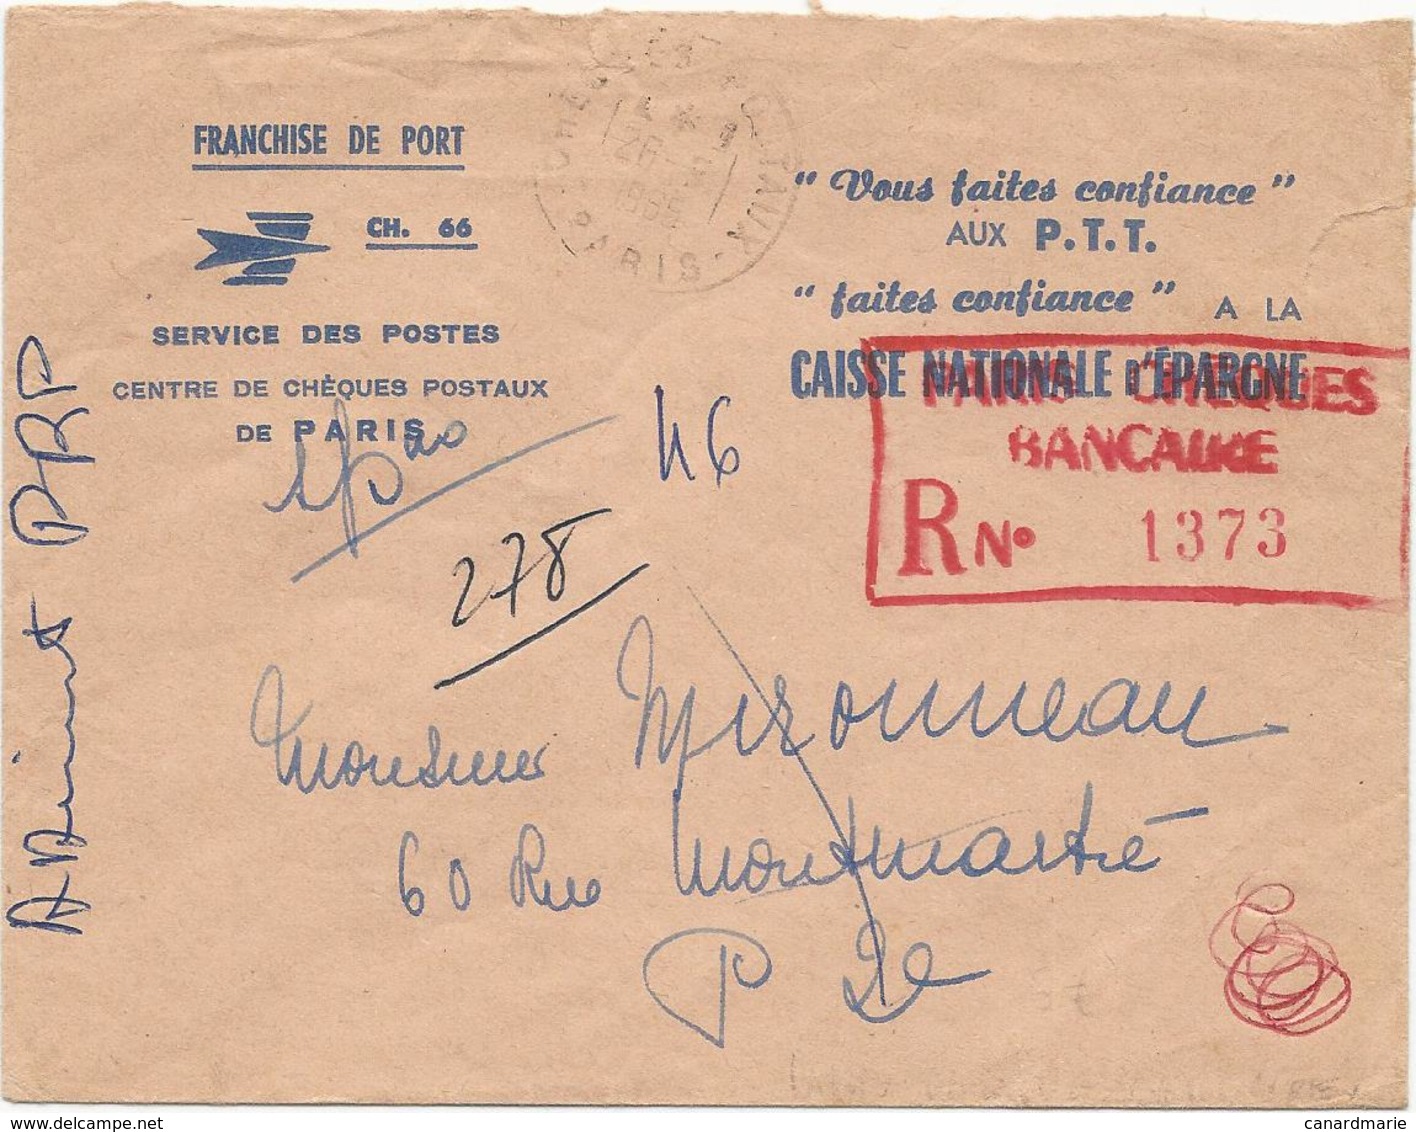 LETTRE 1965 EXPEDIEE EN POSTE RESTANTE AVEC CACHET ROUGE PARIS CHEQUES BANCAIRE R N° 1373 - Cachets Manuels